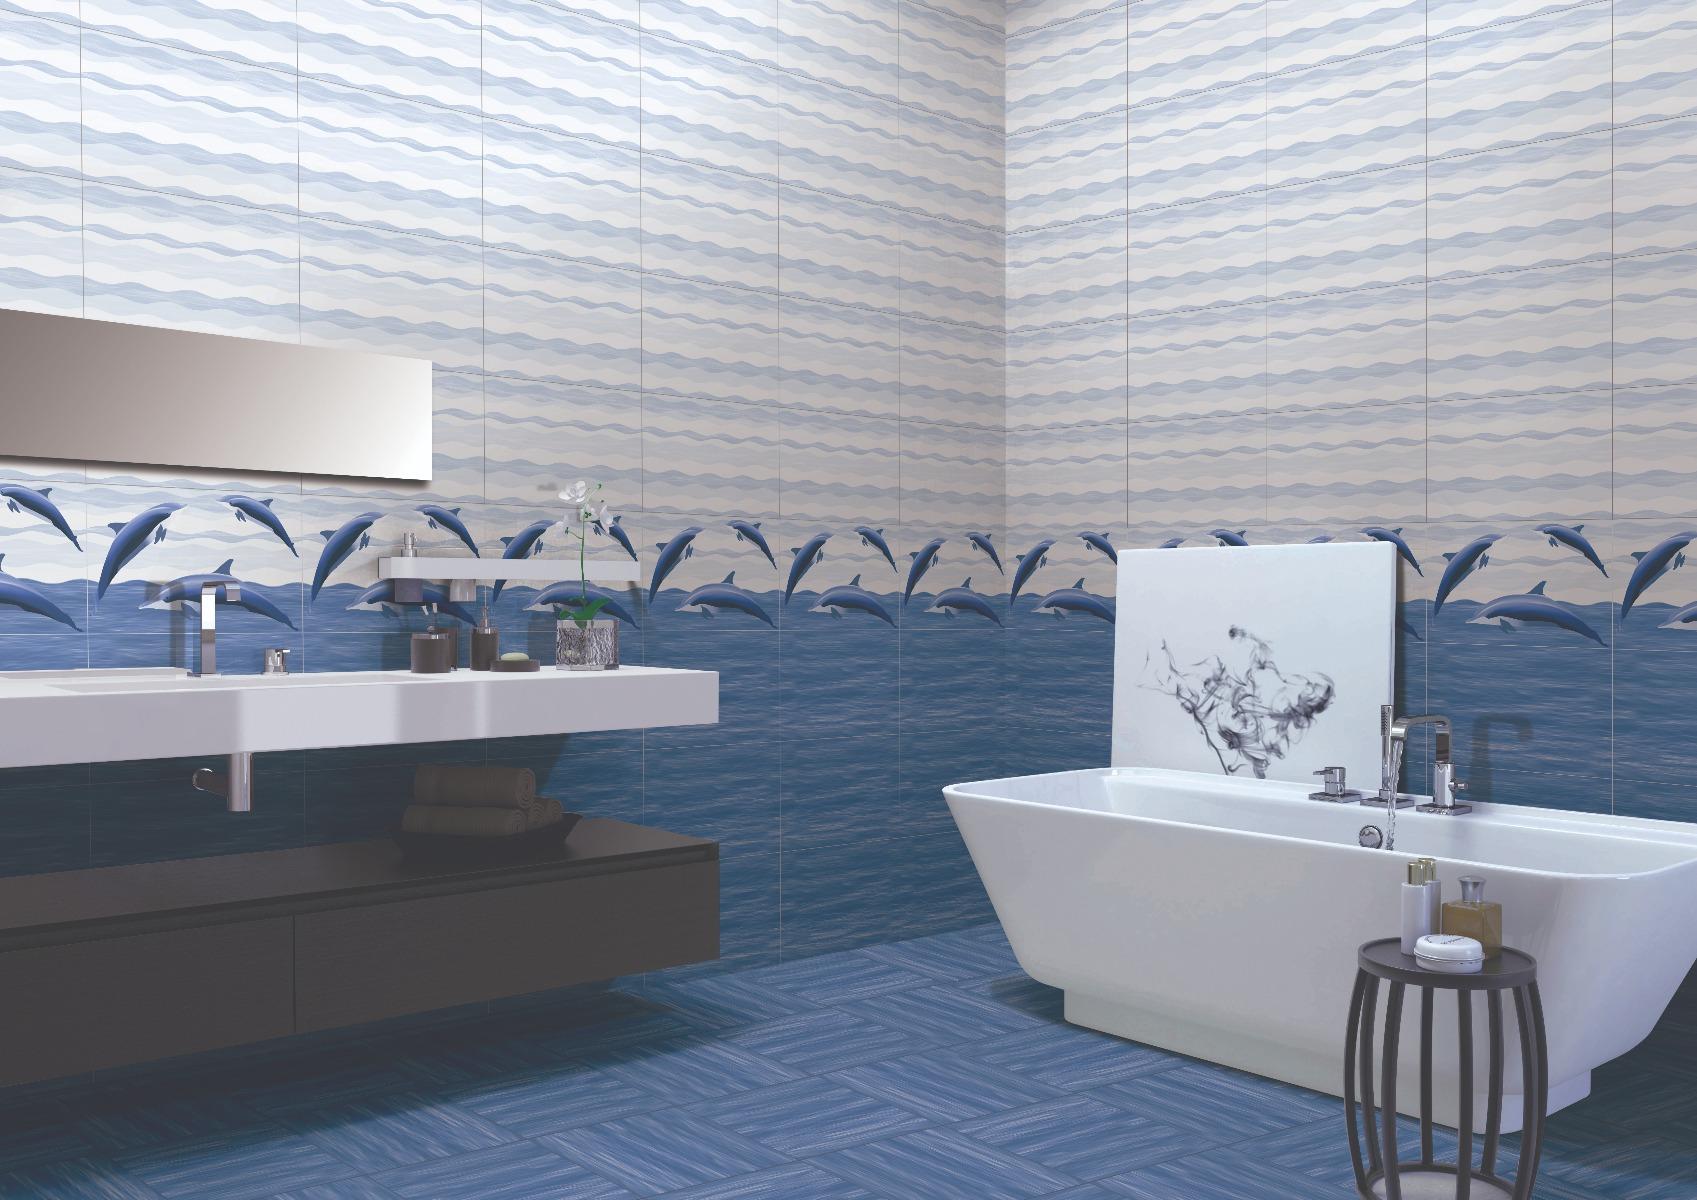 Digital Glazed Vitrified Tiles for Bathroom Tiles